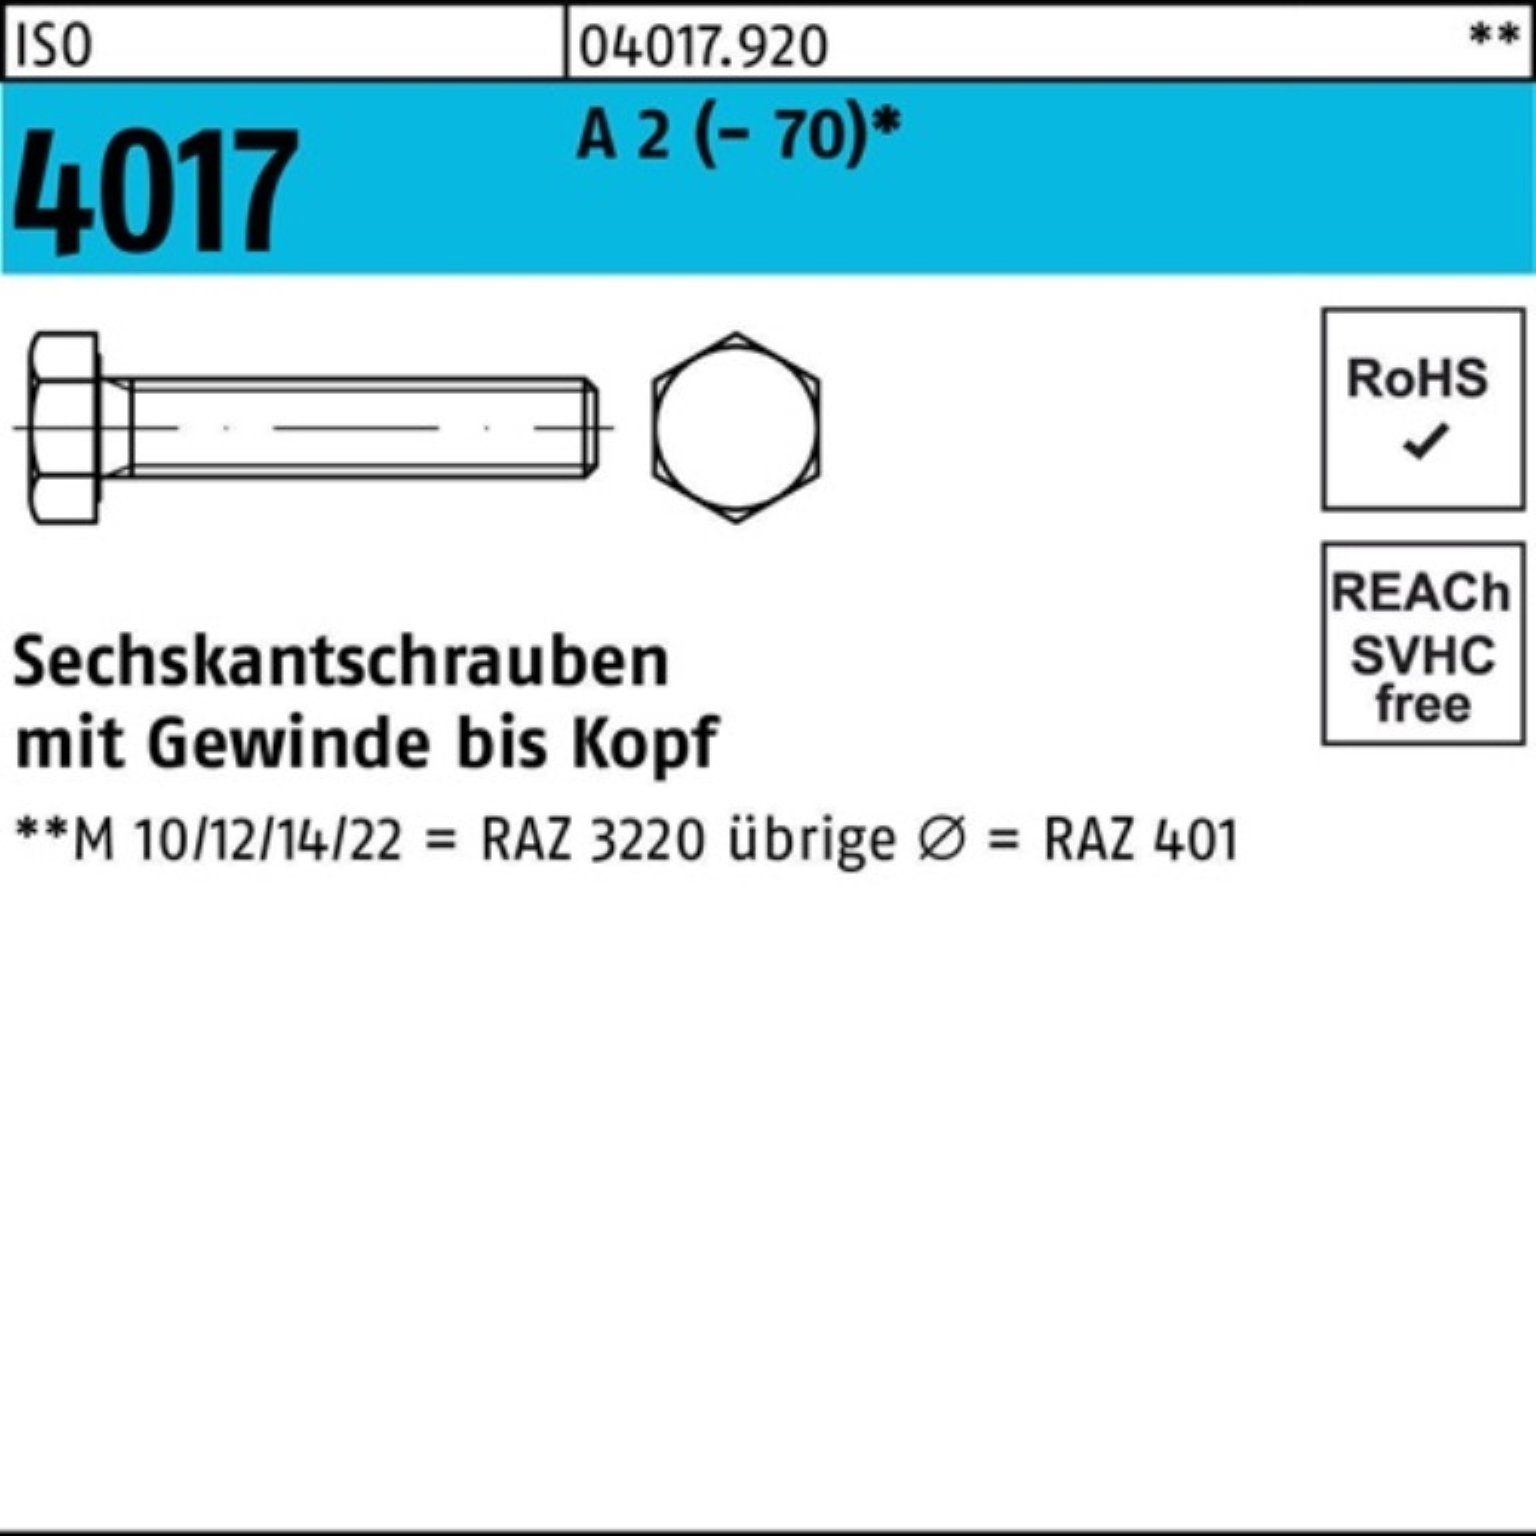 Bufab Sechskantschraube 100er Pack Sechskantschraube ISO 4017 VG M24x 100 A 2 (70) 1 Stück